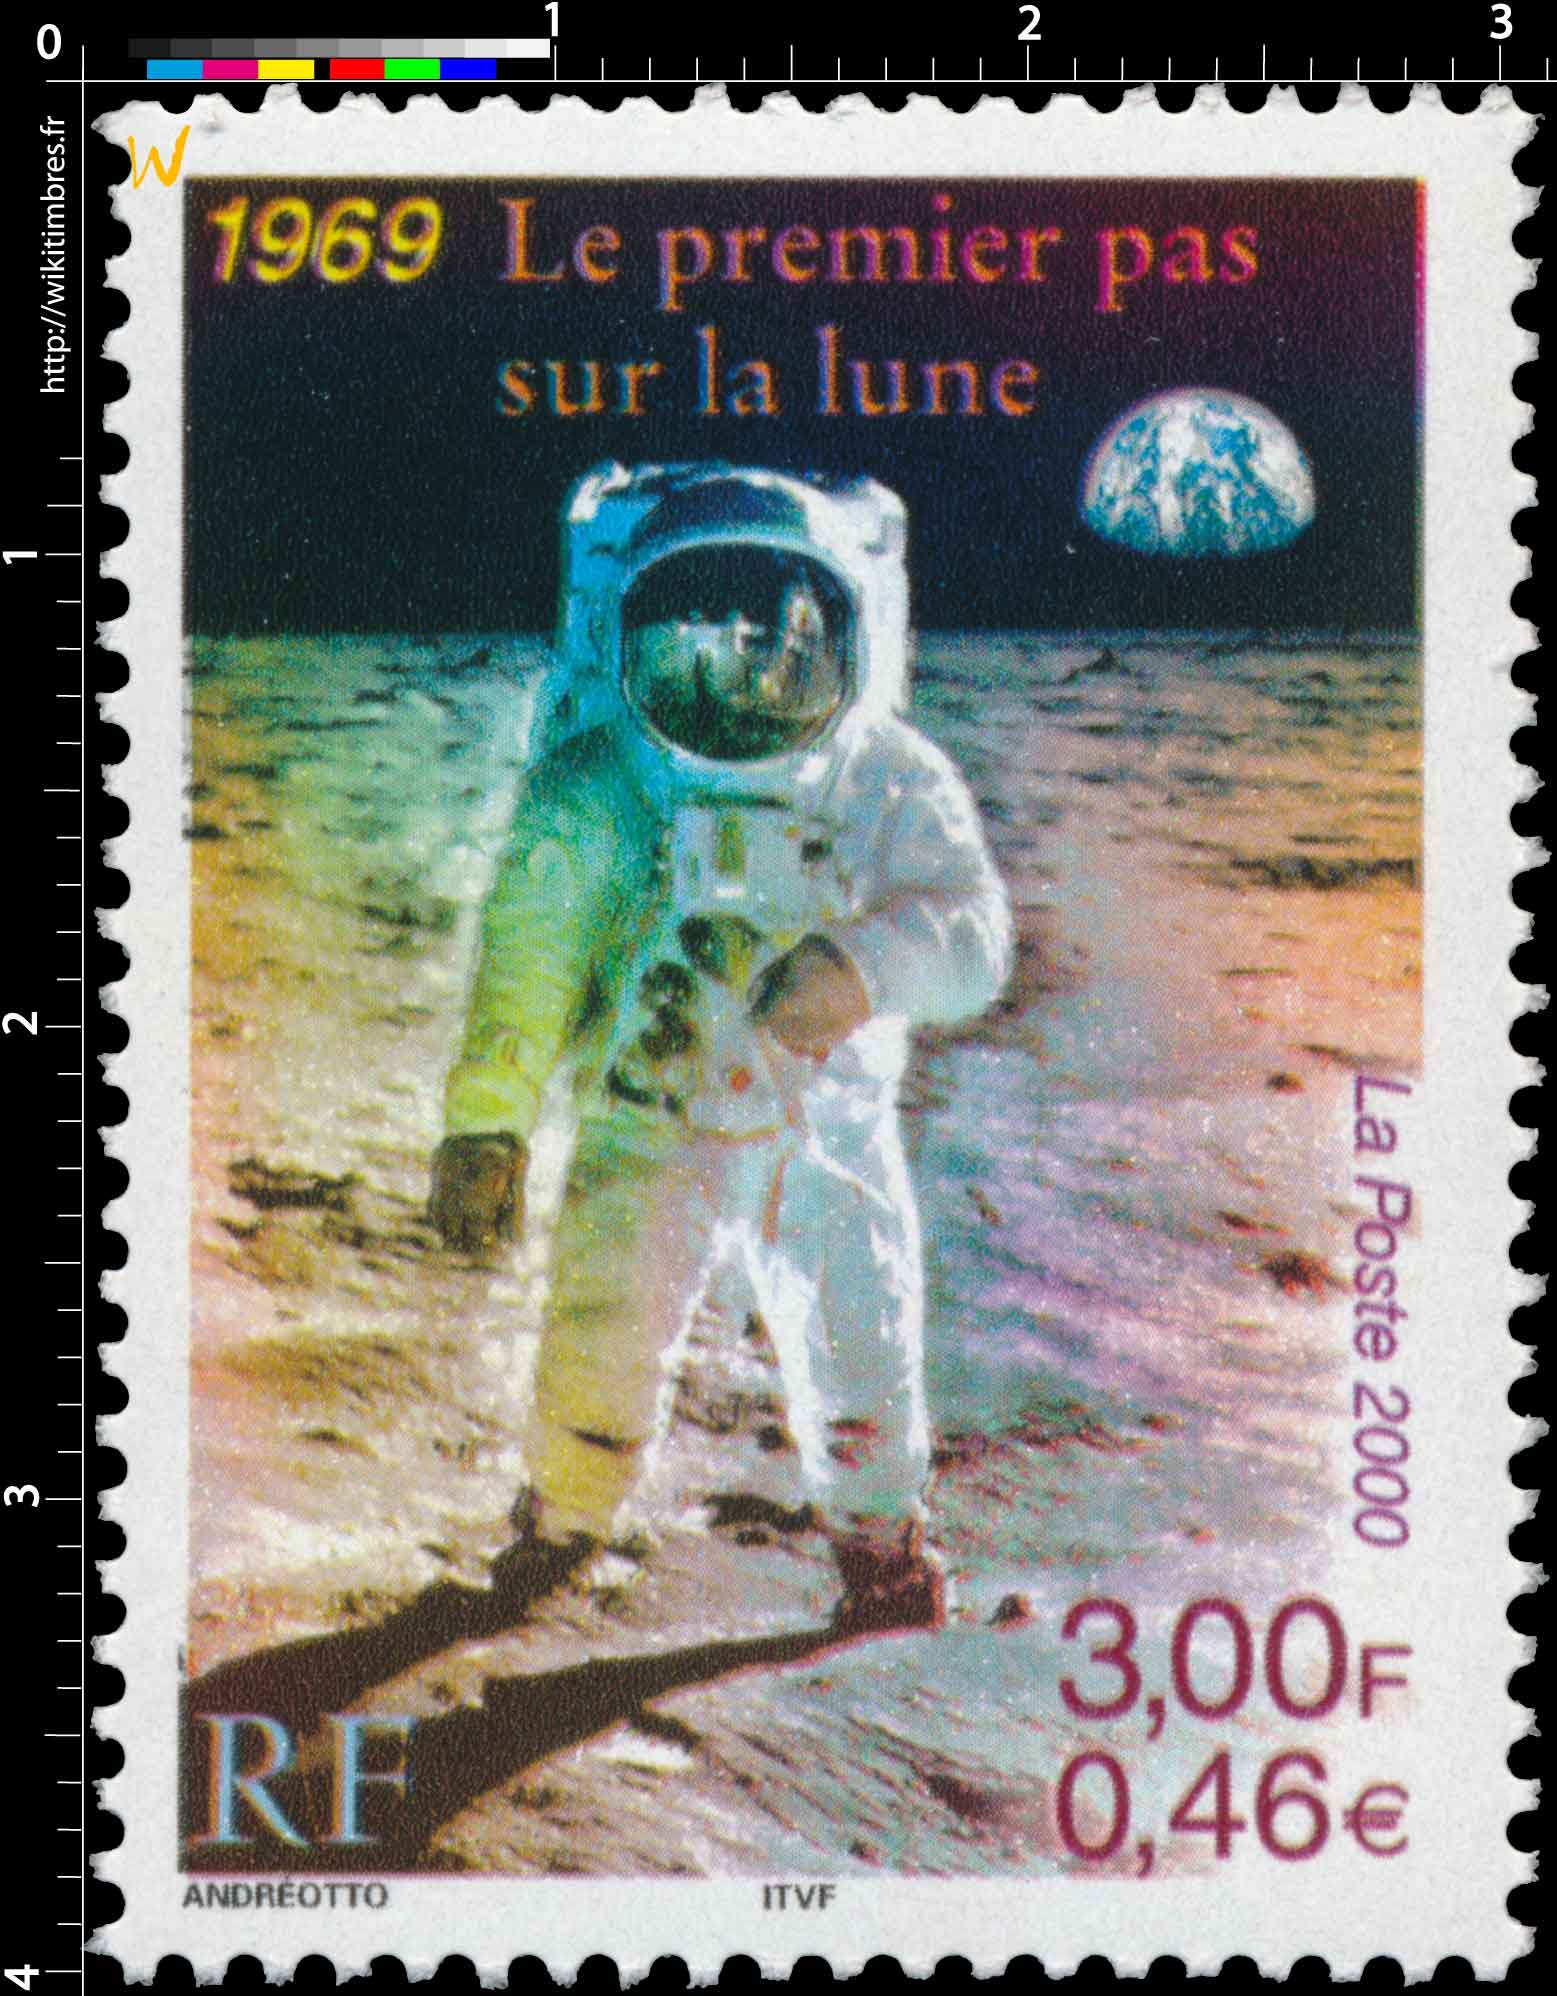 2000 1969 Le premier pas sur la lune